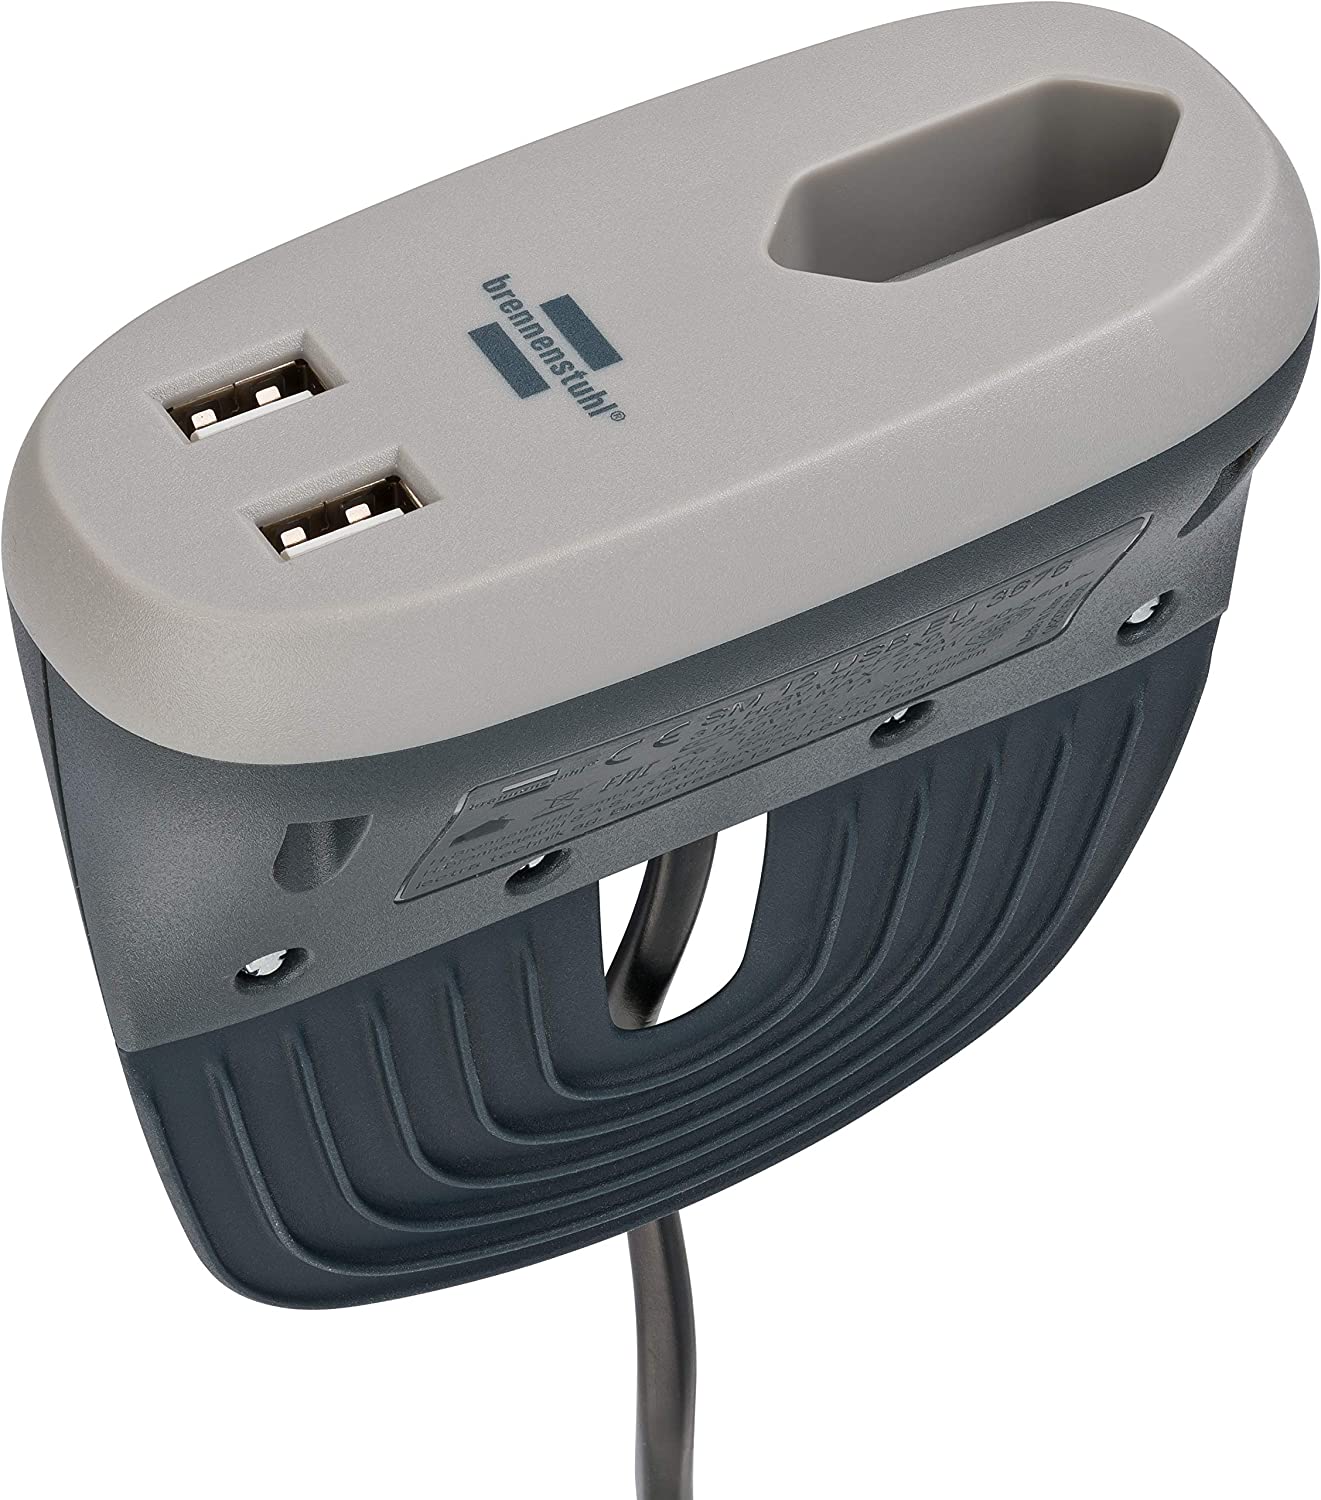 Bild zu Brennenstuhl Estilo Sofa-Steckdose mit USB-Ladefunktion für 11,99€ (Vergleich: 17,94€)